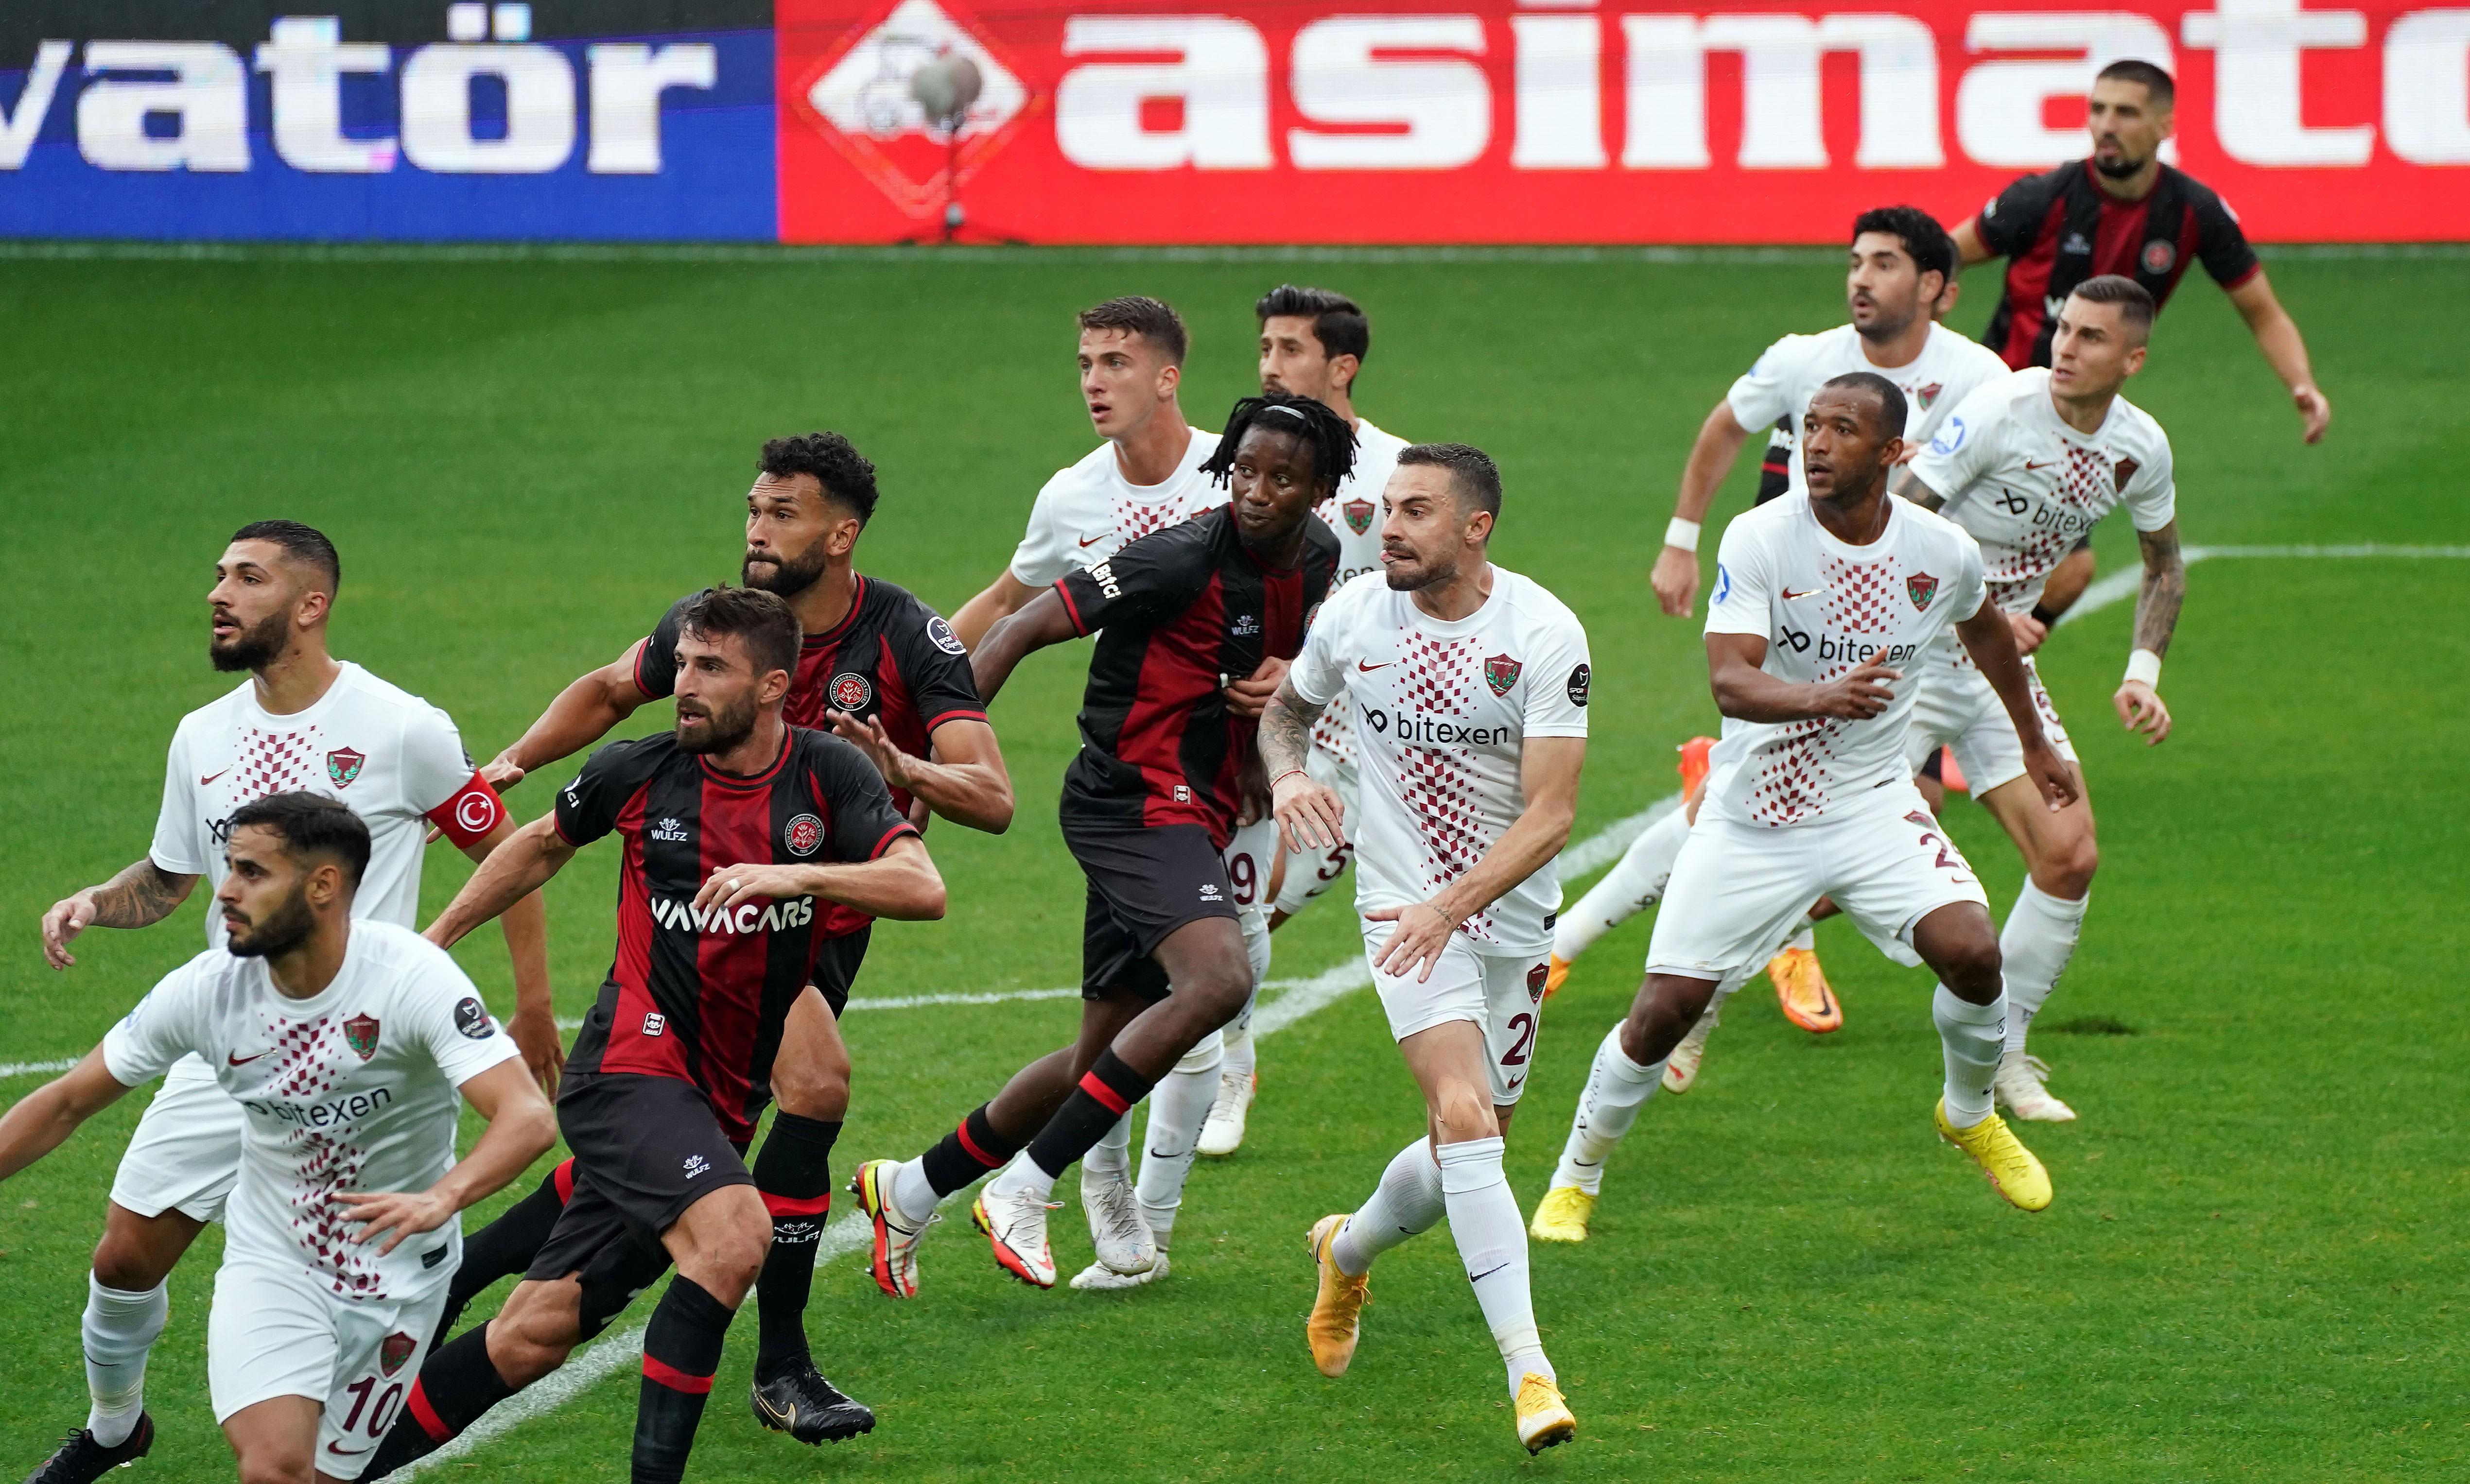 (ÖZET) Fatih Karagümrük-Hatayspor maç sonucu: 3-0